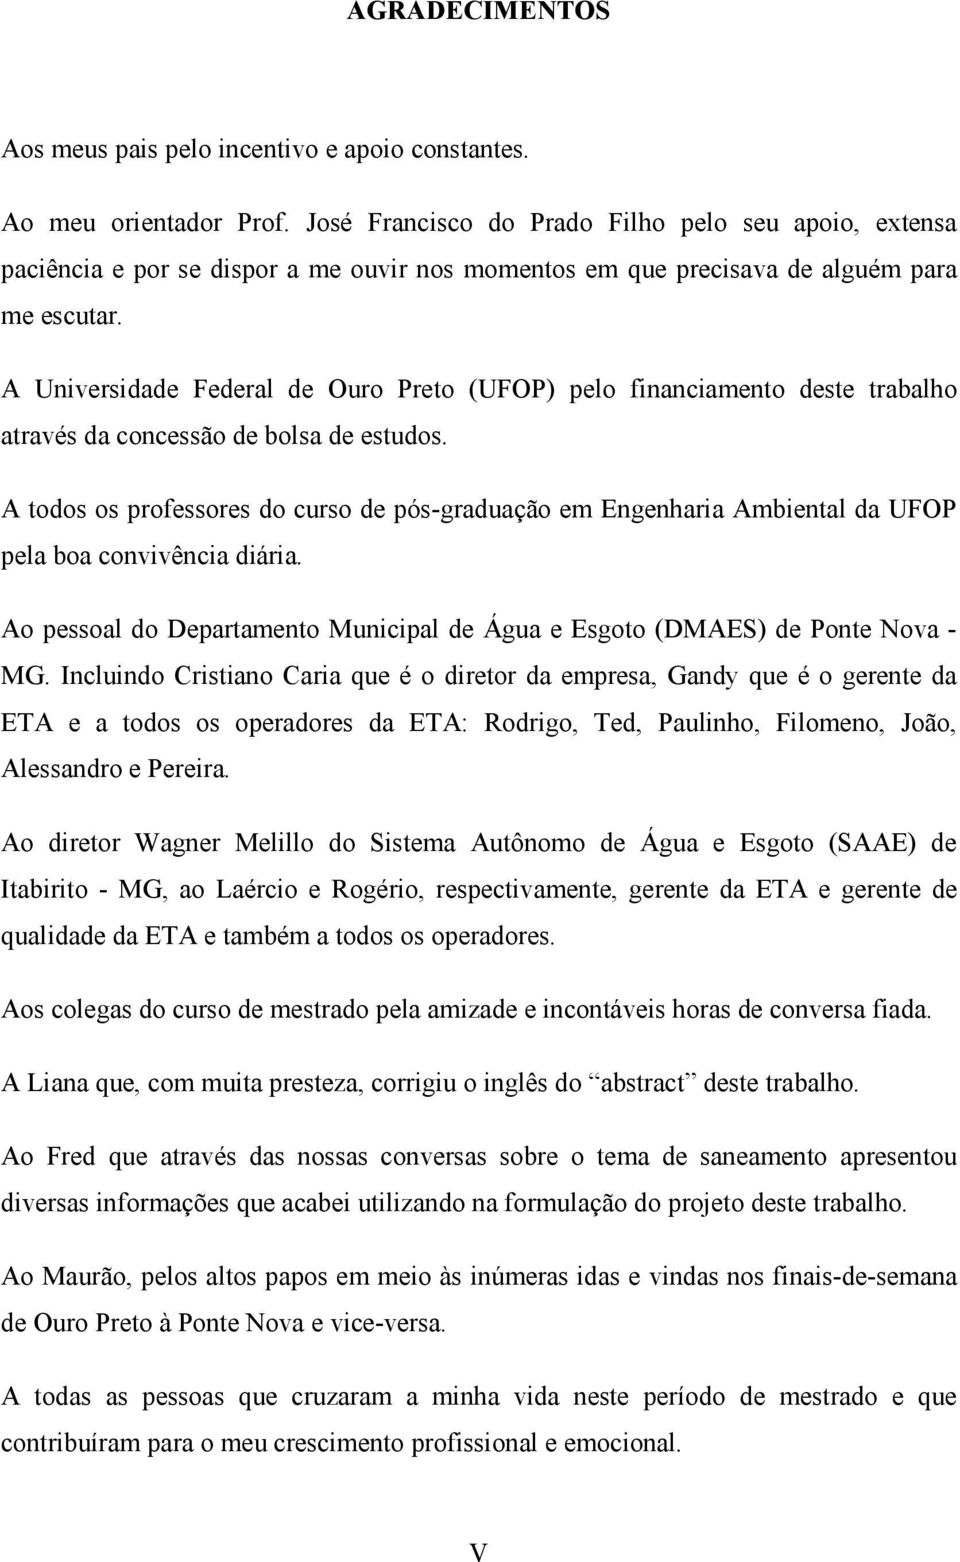 A Universidade Federal de Ouro Preto (UFOP) pelo financiamento deste trabalho através da concessão de bolsa de estudos.